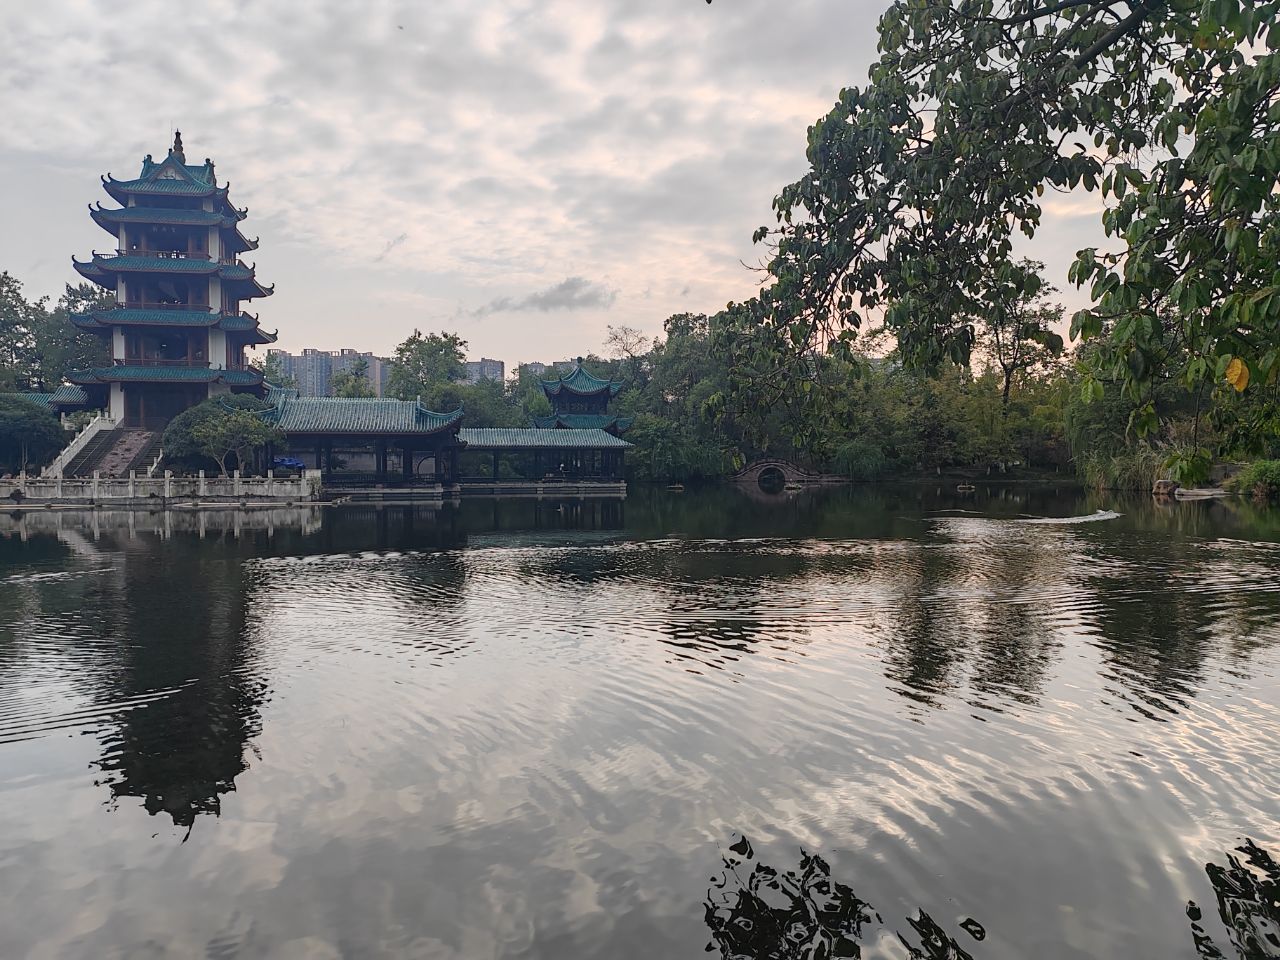 再行桂湖公园,新都历史的印记